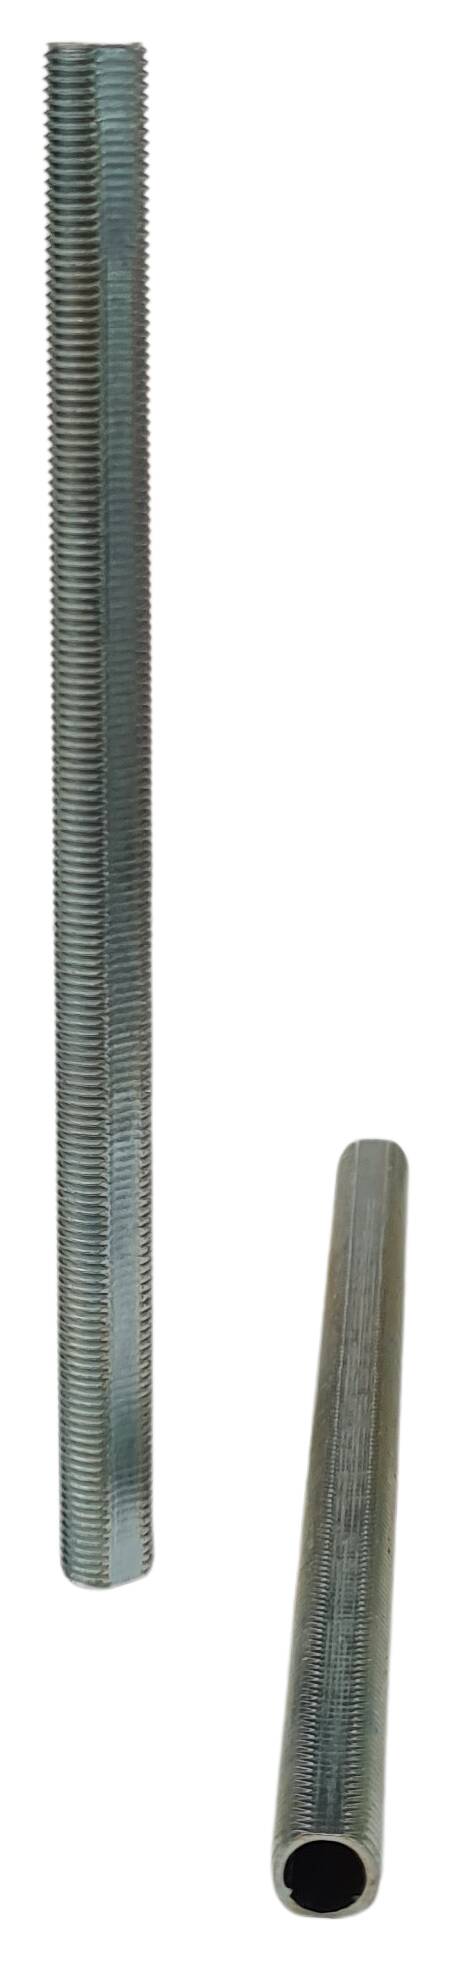 iron thread tube M10x1x135 profil zinc